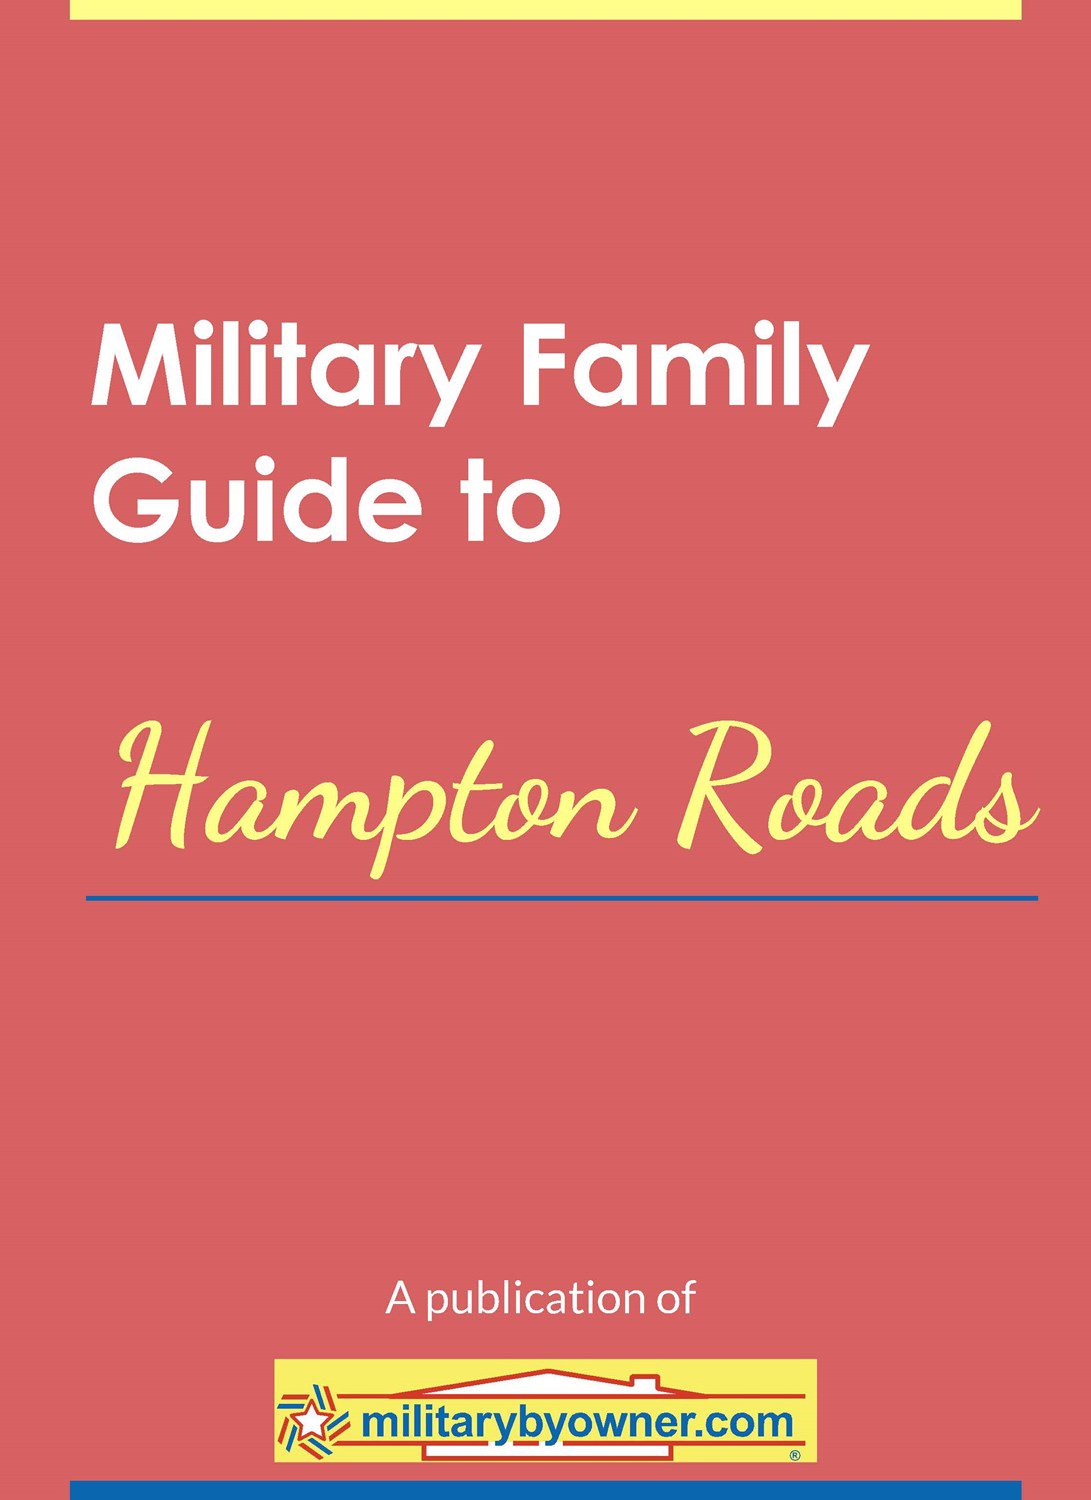 Hampton_Roads_ebook_cover_(1)